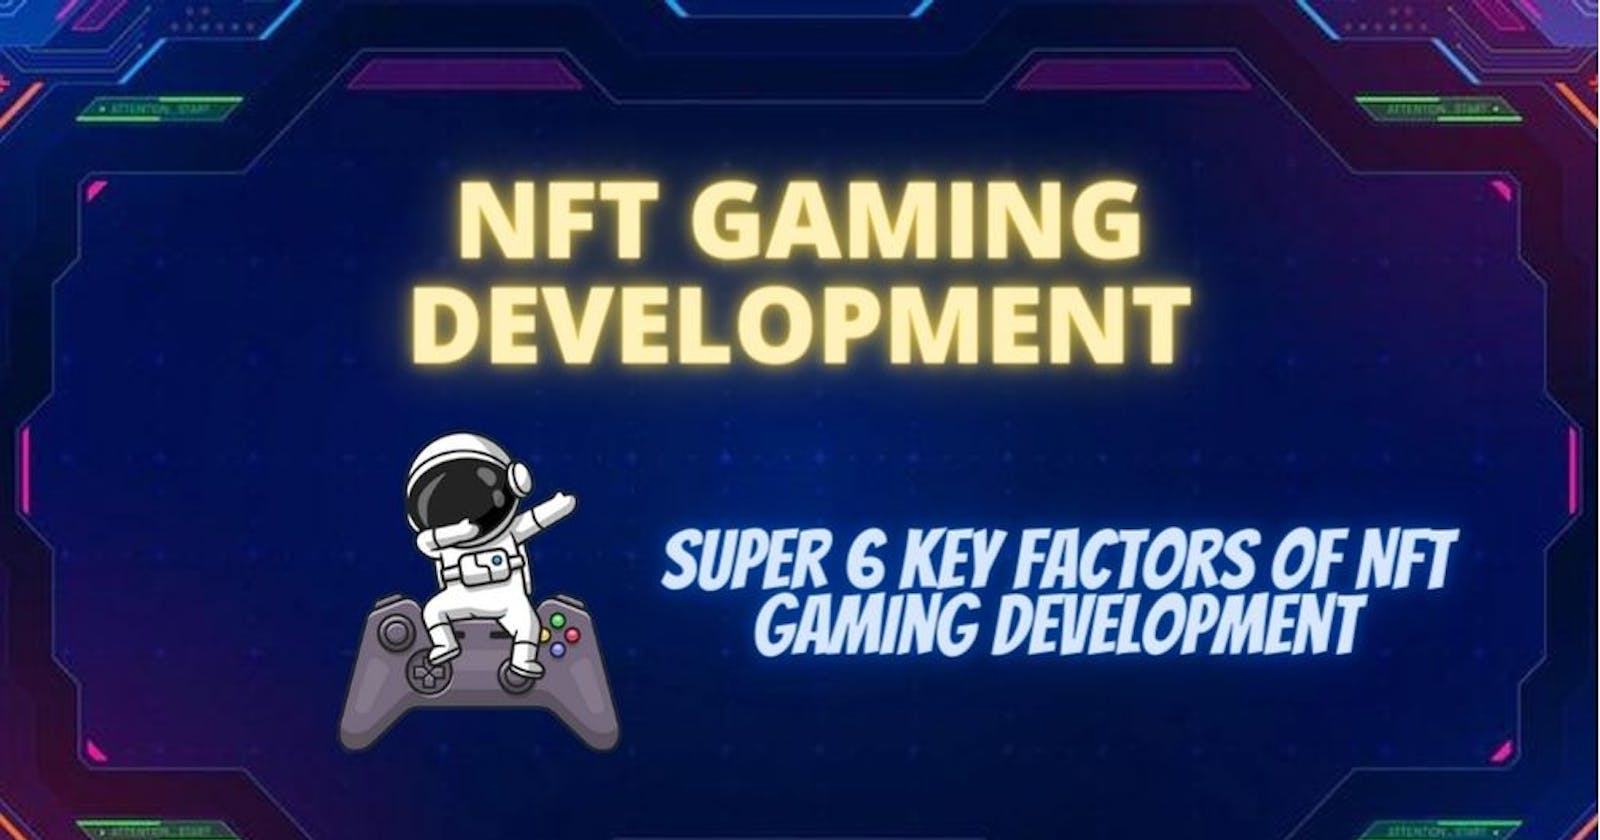 Super 6 Key factors of NFT Gaming development